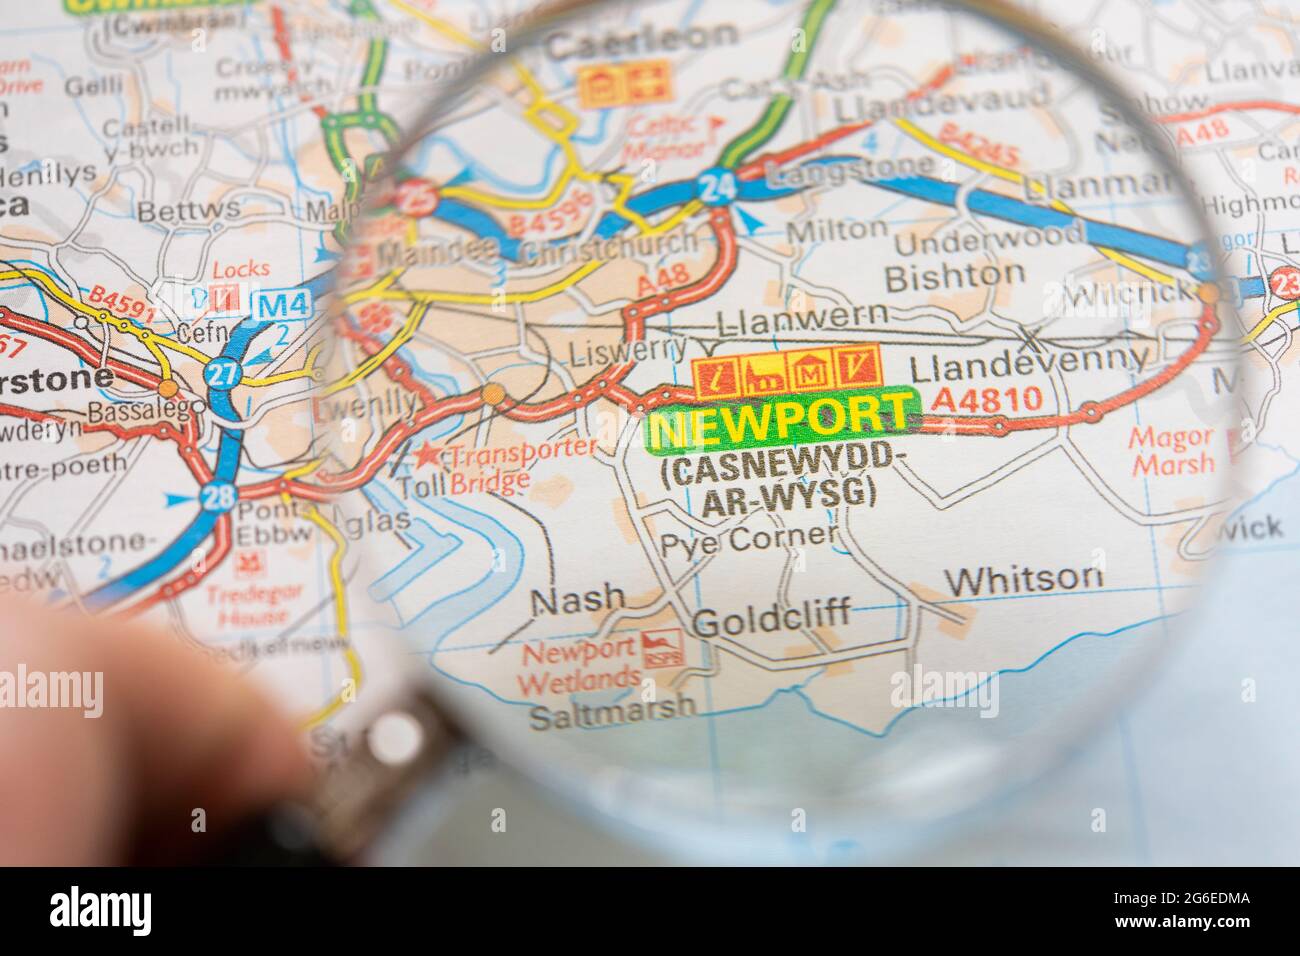 Nahaufnahme einer Seite in einem gedruckten Straßenkarte-Atlas mit einer Männerhand, die eine Lupe mit einer Vergrößerung der walisischen Stadt Newport hält Stockfoto